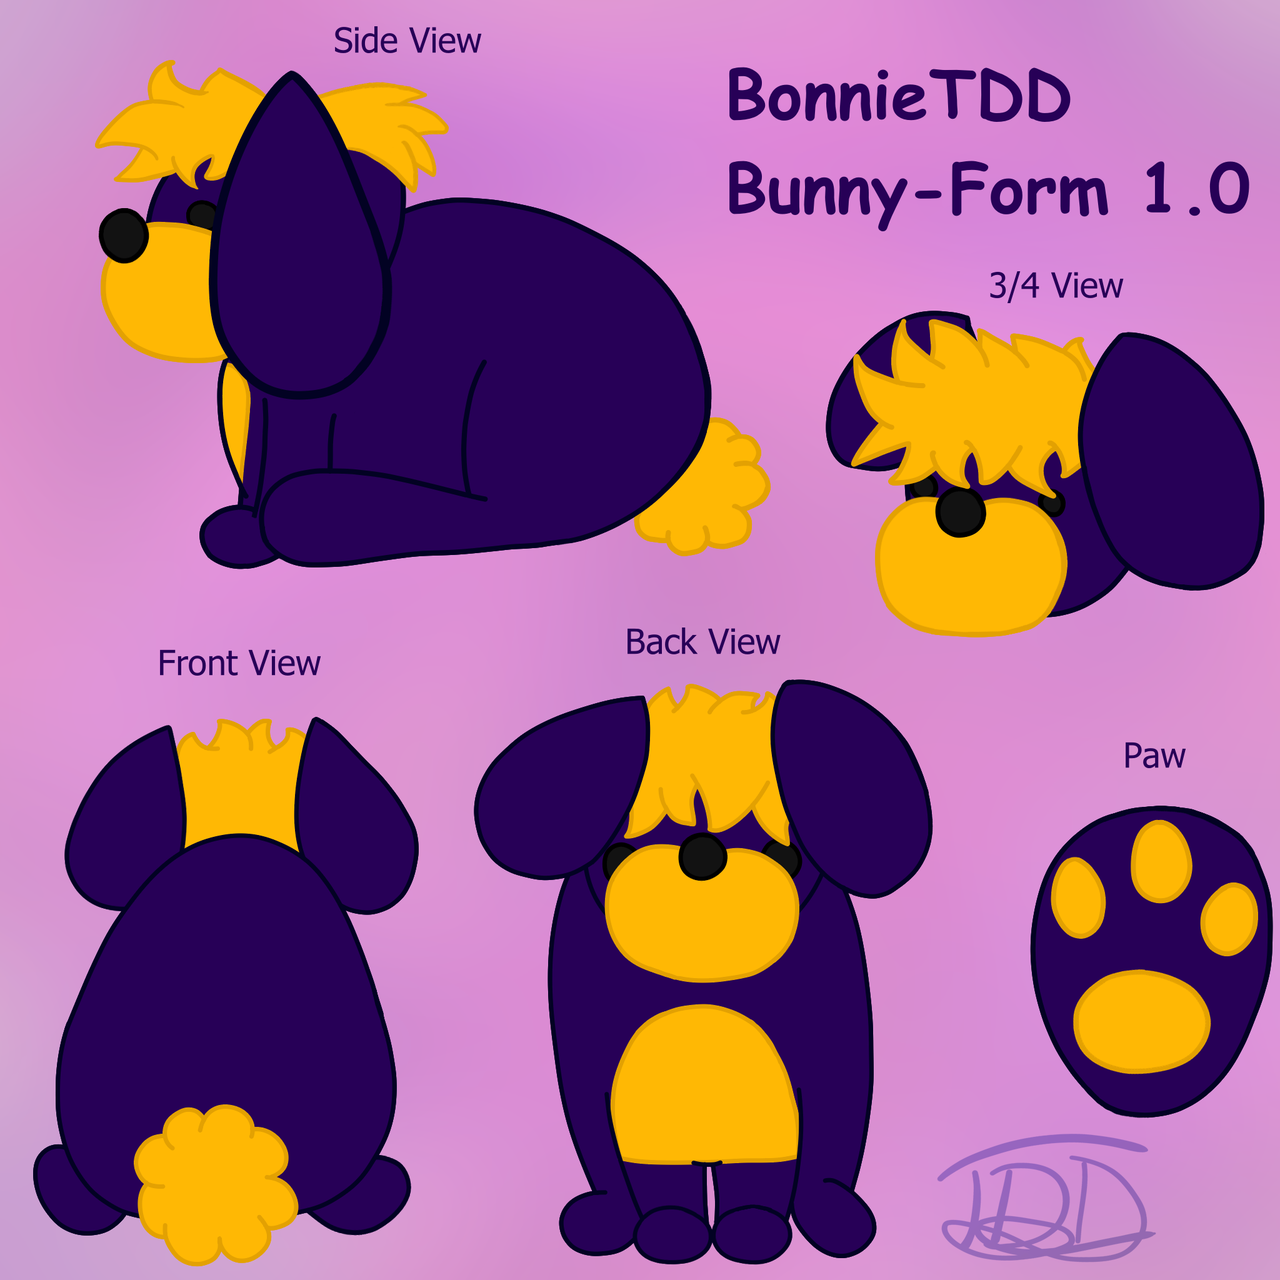 BonnieTDD Bunny-Form